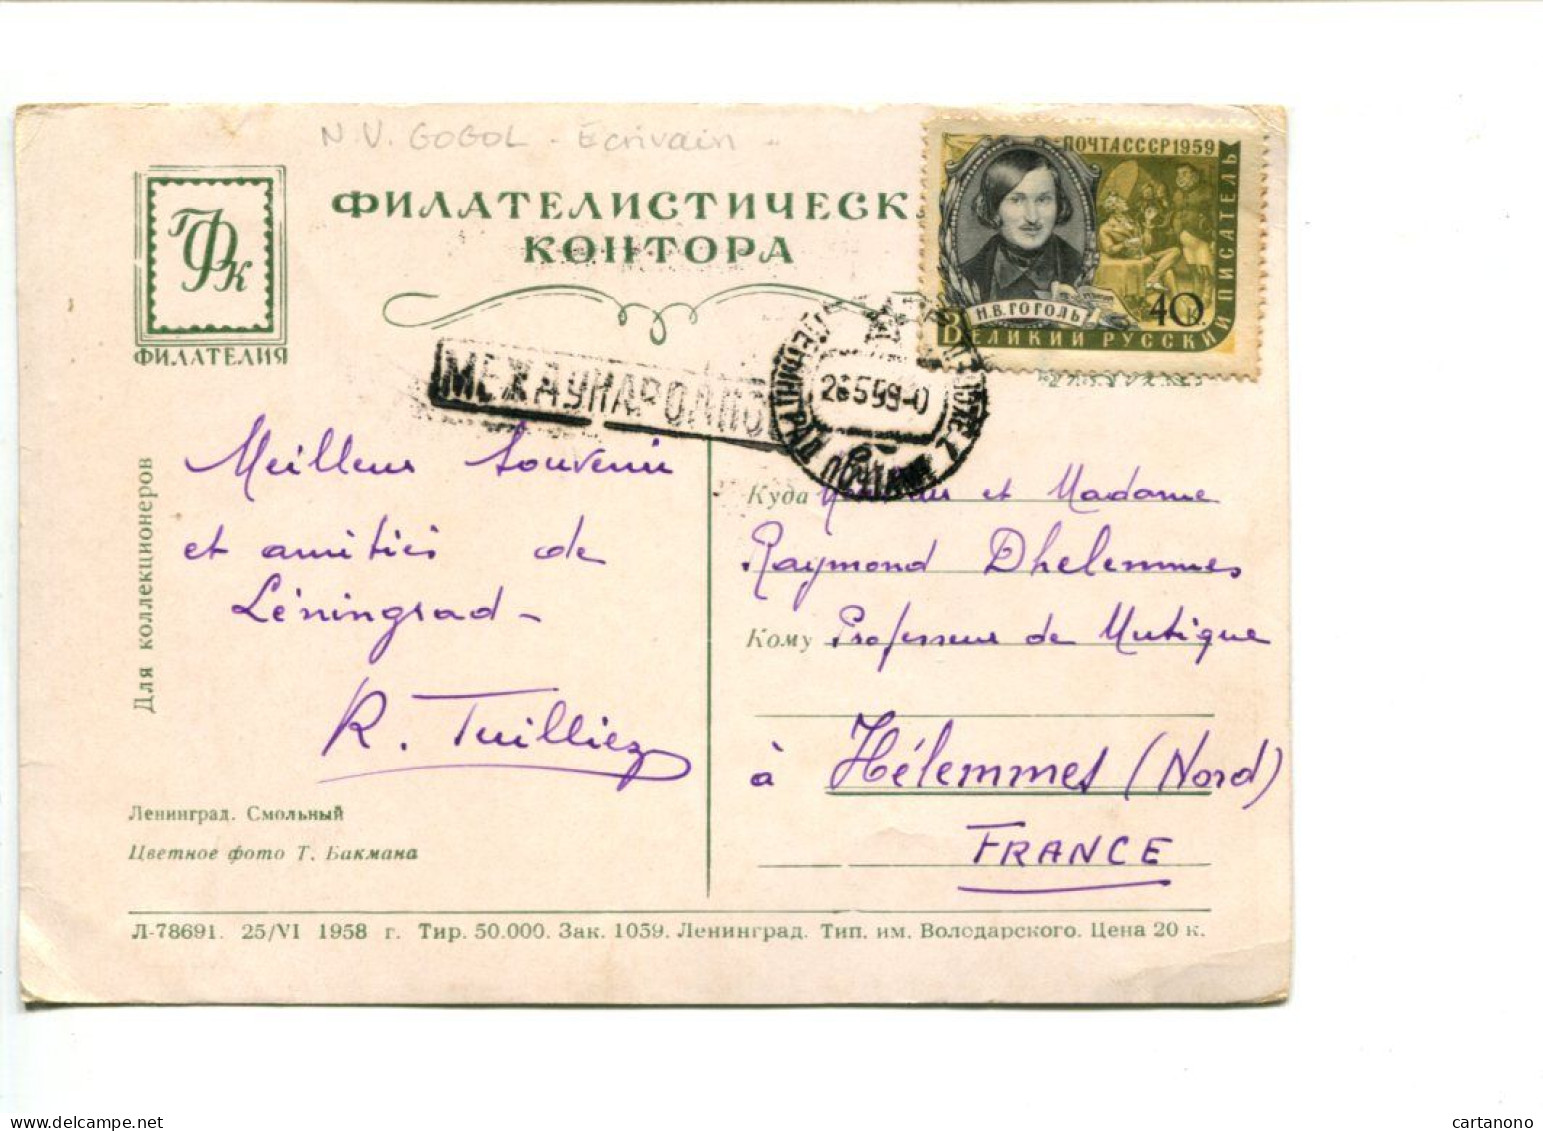 URSS - Affranchissement Sur Carte Postale - Ecrivain N.V. GOGOL - Lettres & Documents